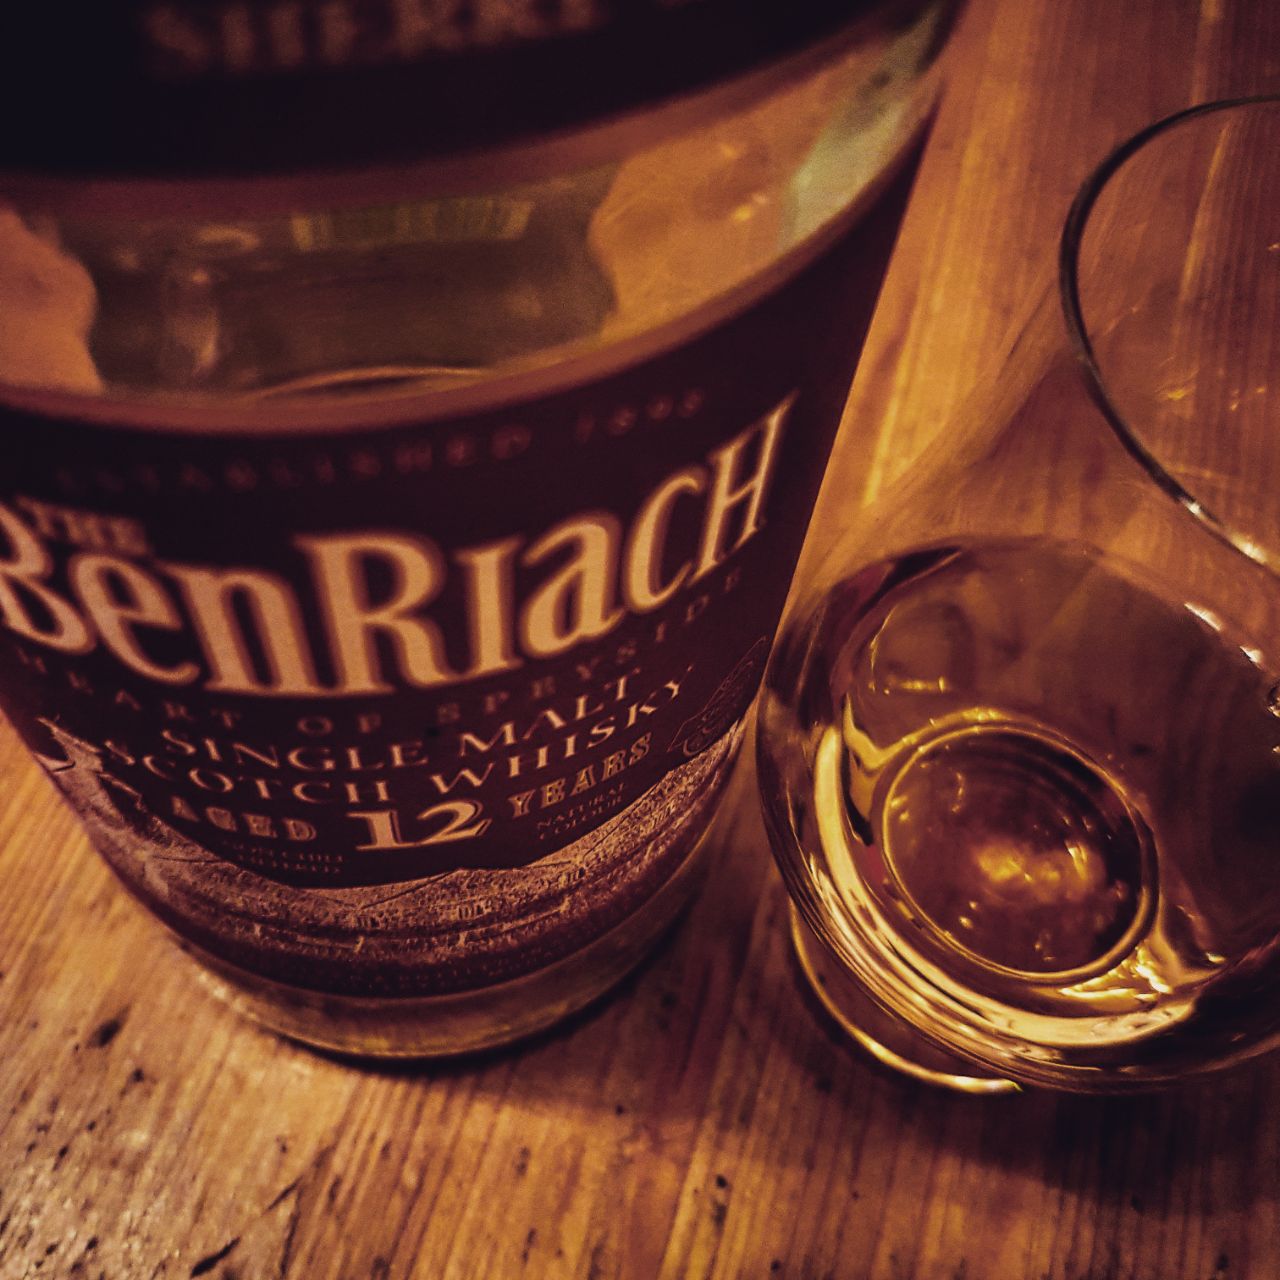 Benriach 12 Jahre Single Malt Scotch Whisky